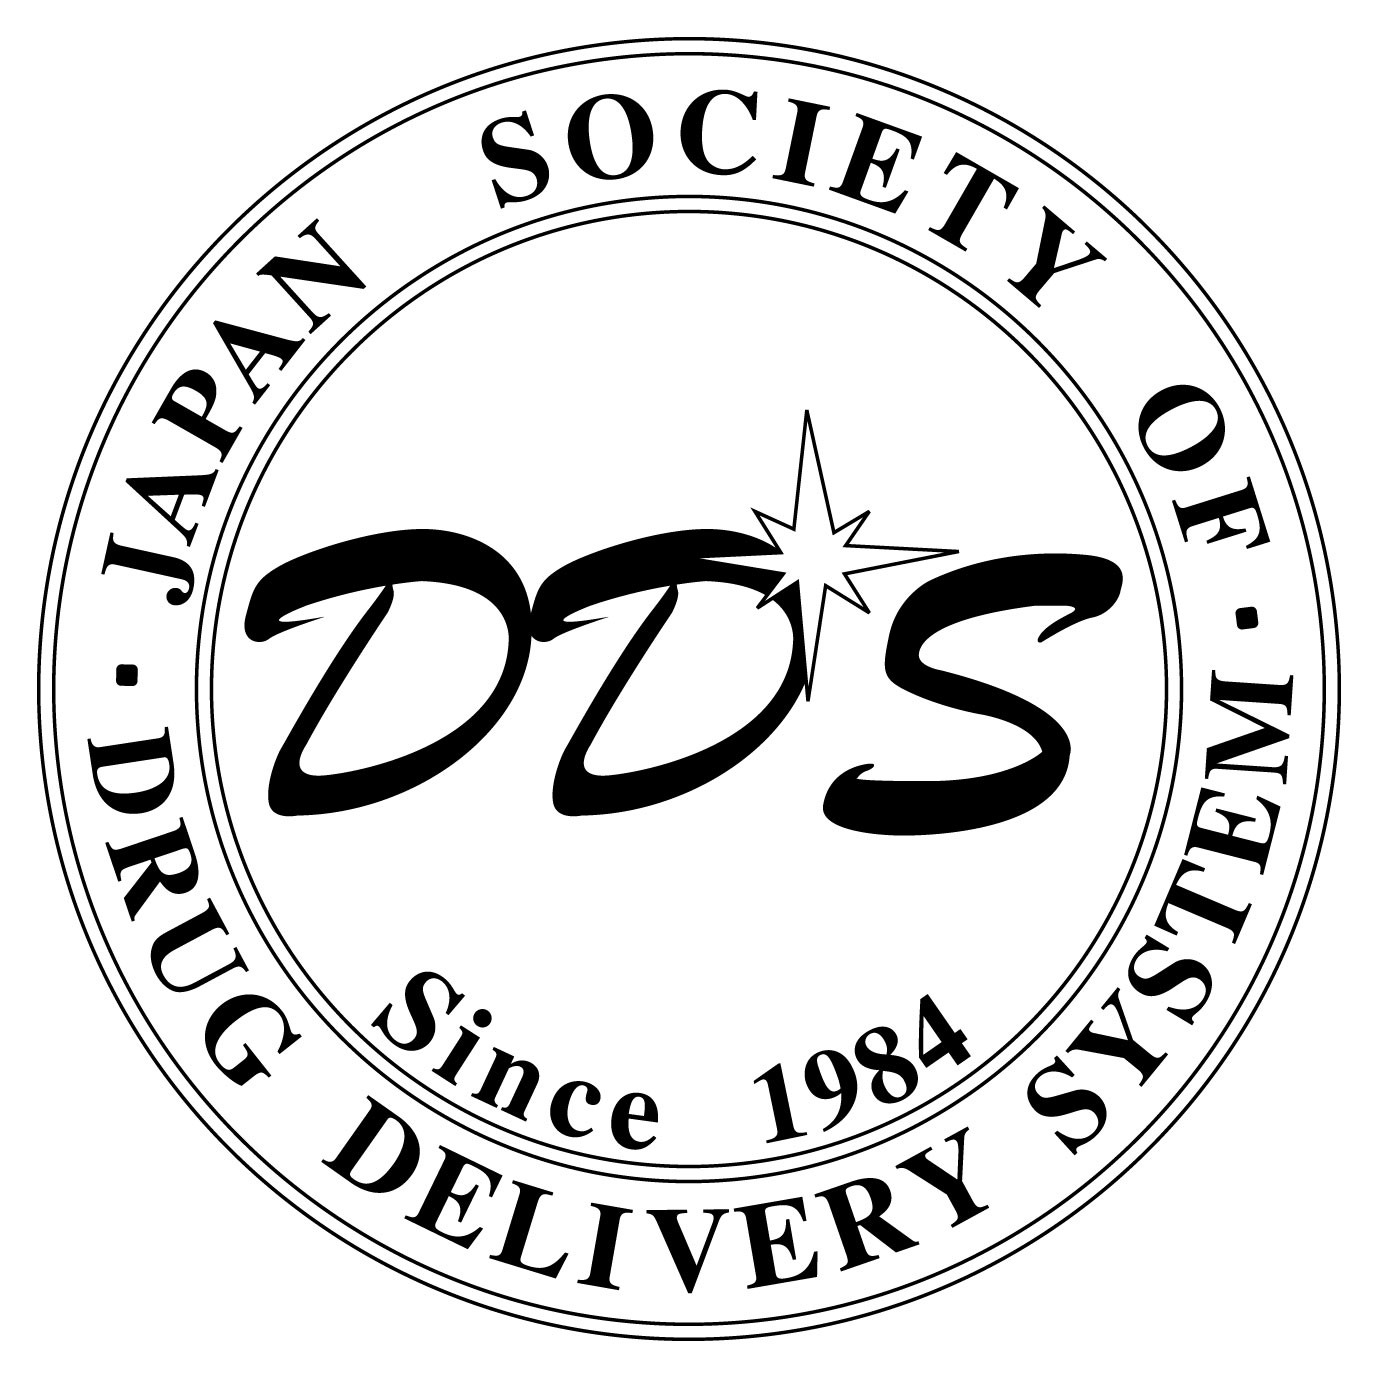 Drug Delivery System